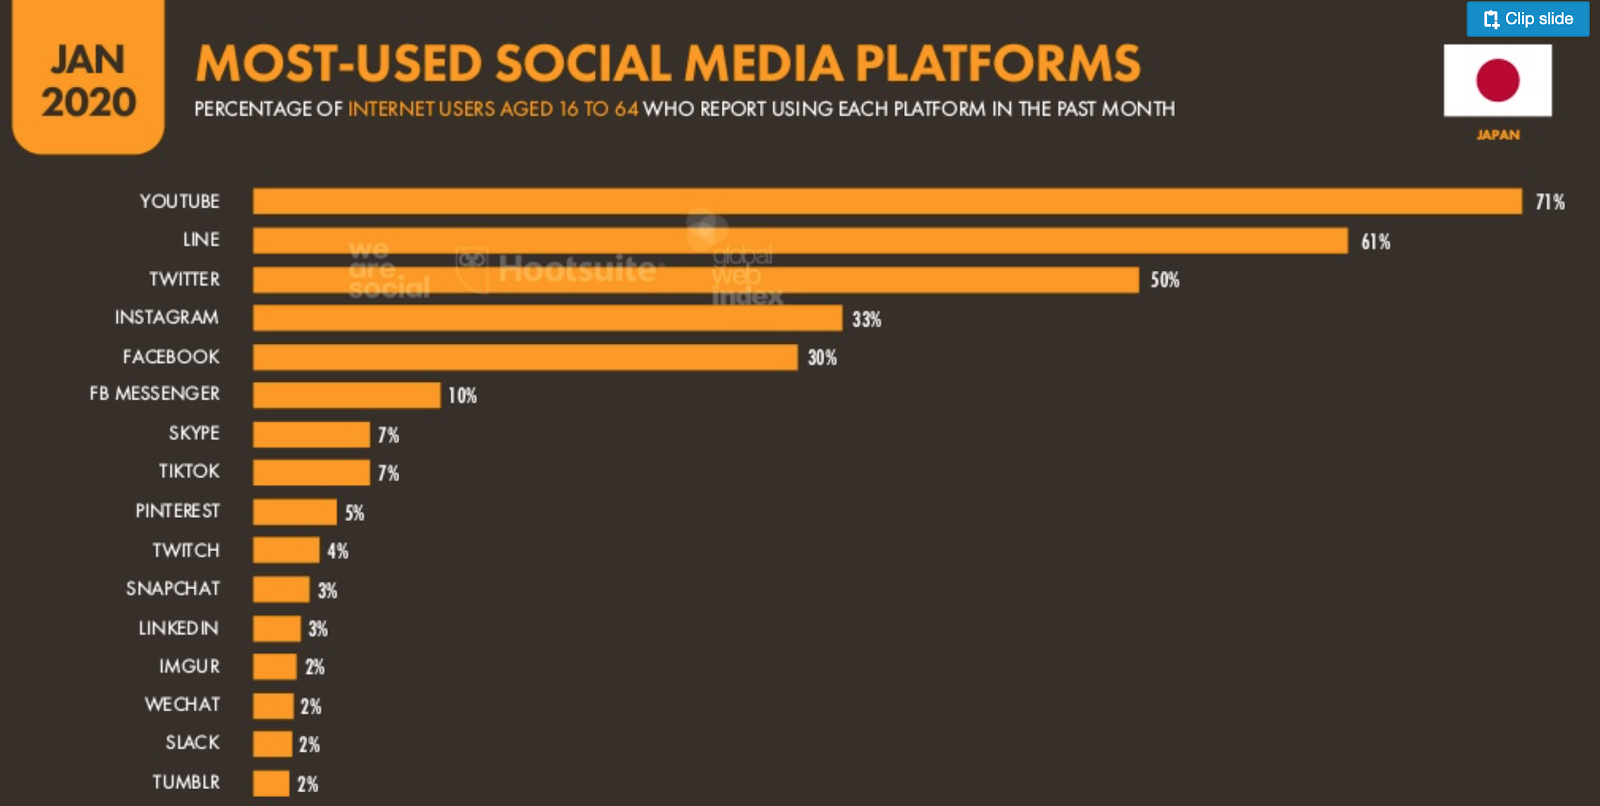 国内のSNS利用者の割合 YouTube71%、LINE61&、Twitter50%、Instagram33%、Facebook30%等